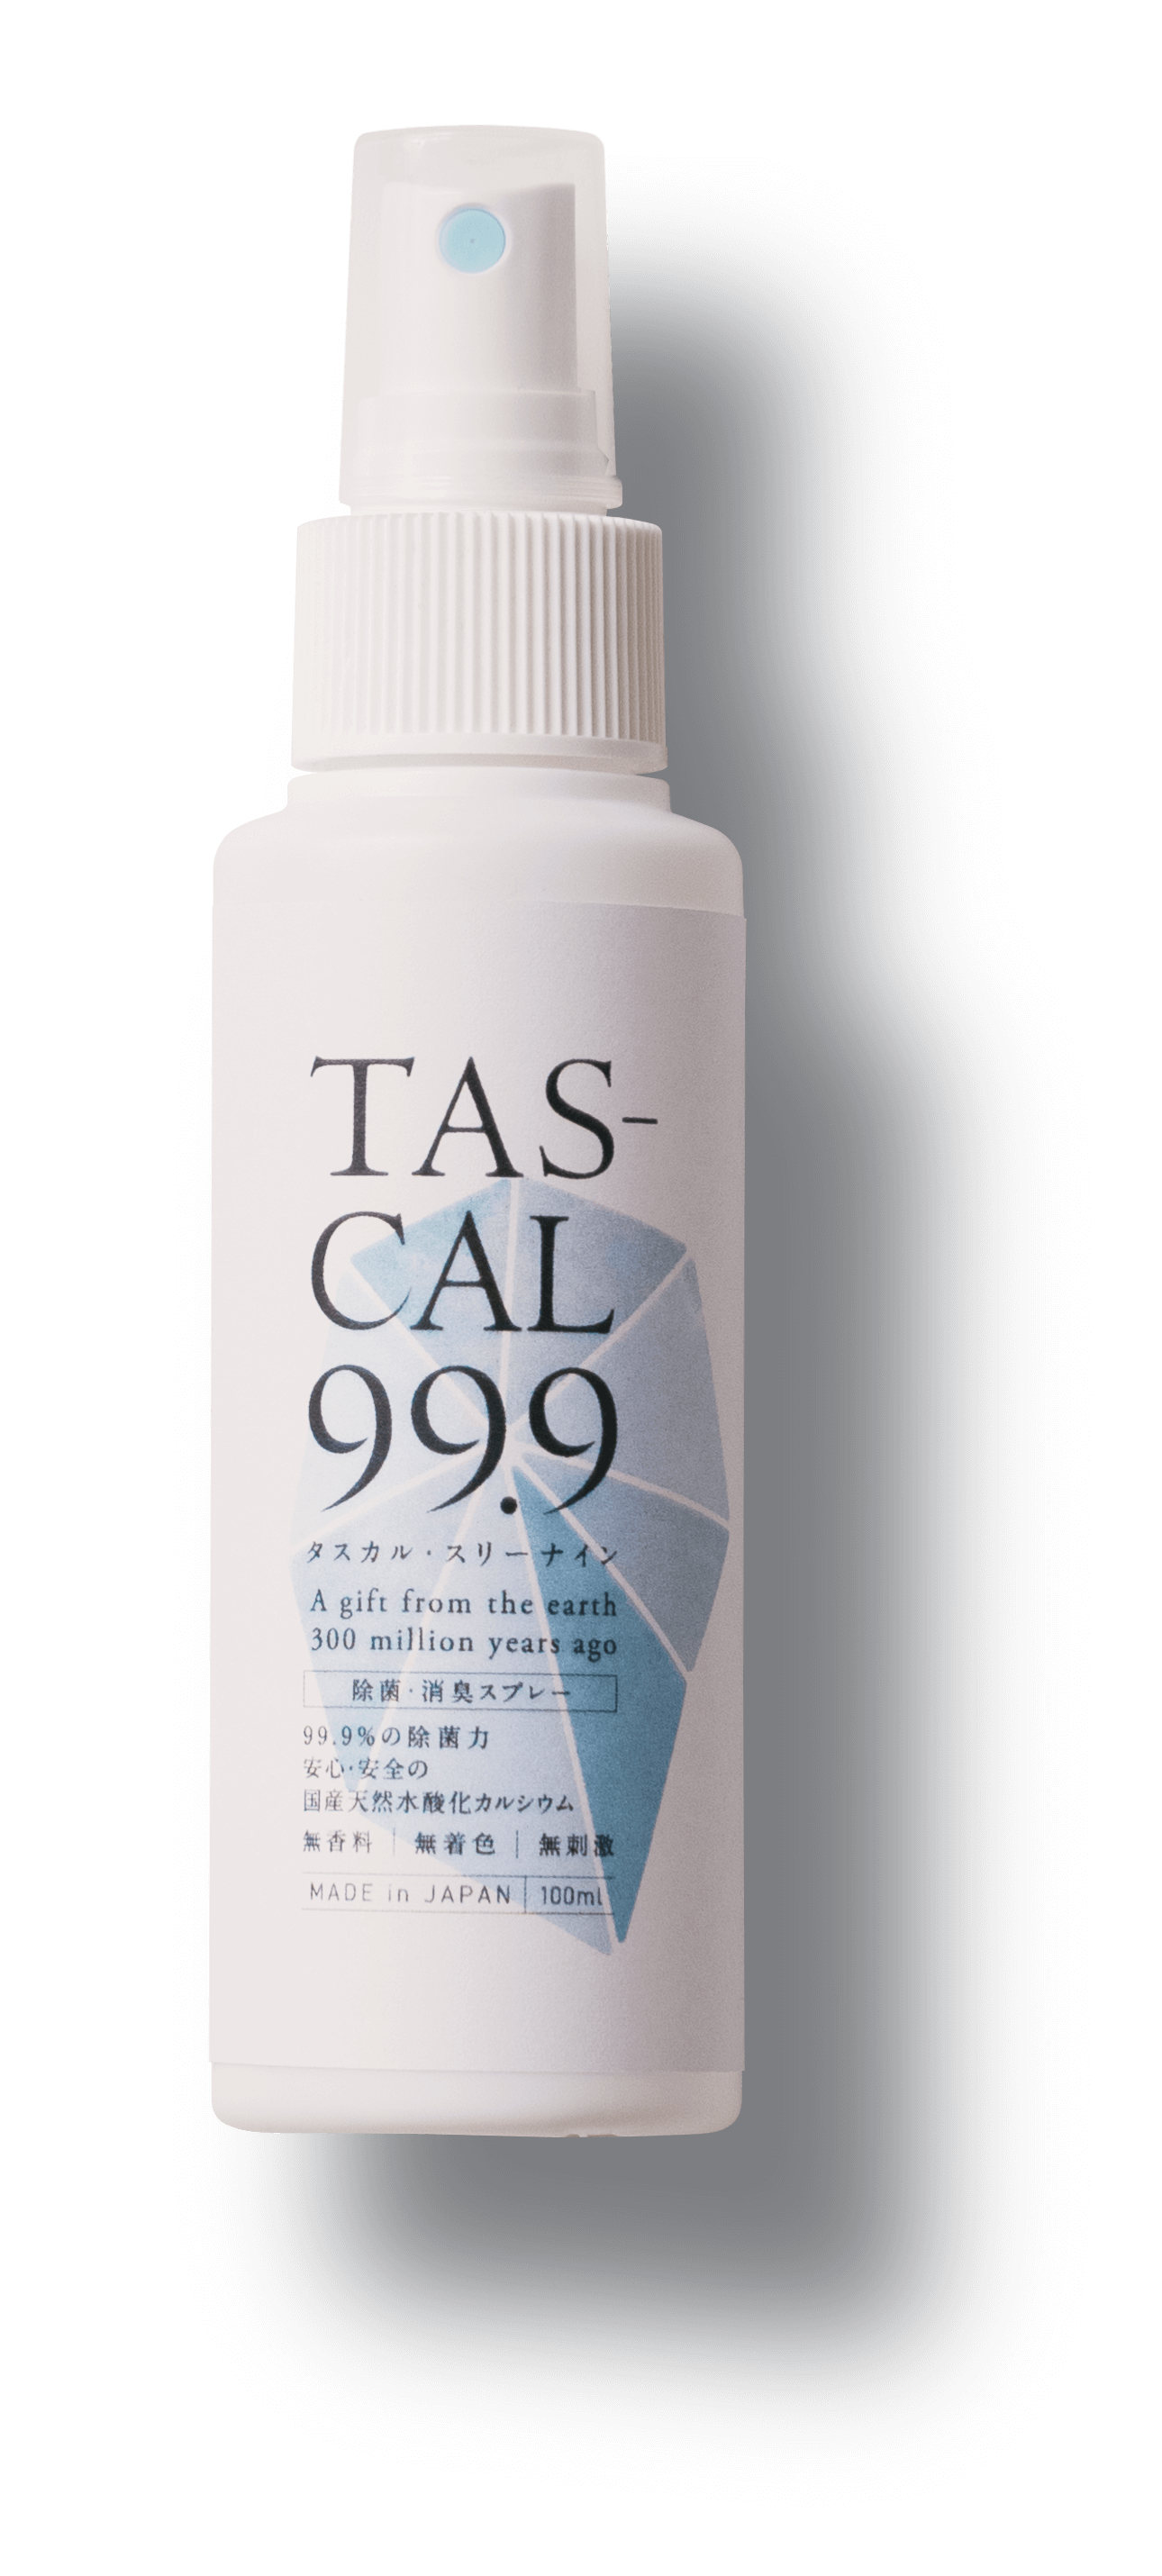 TAS-CAL99.9 100m